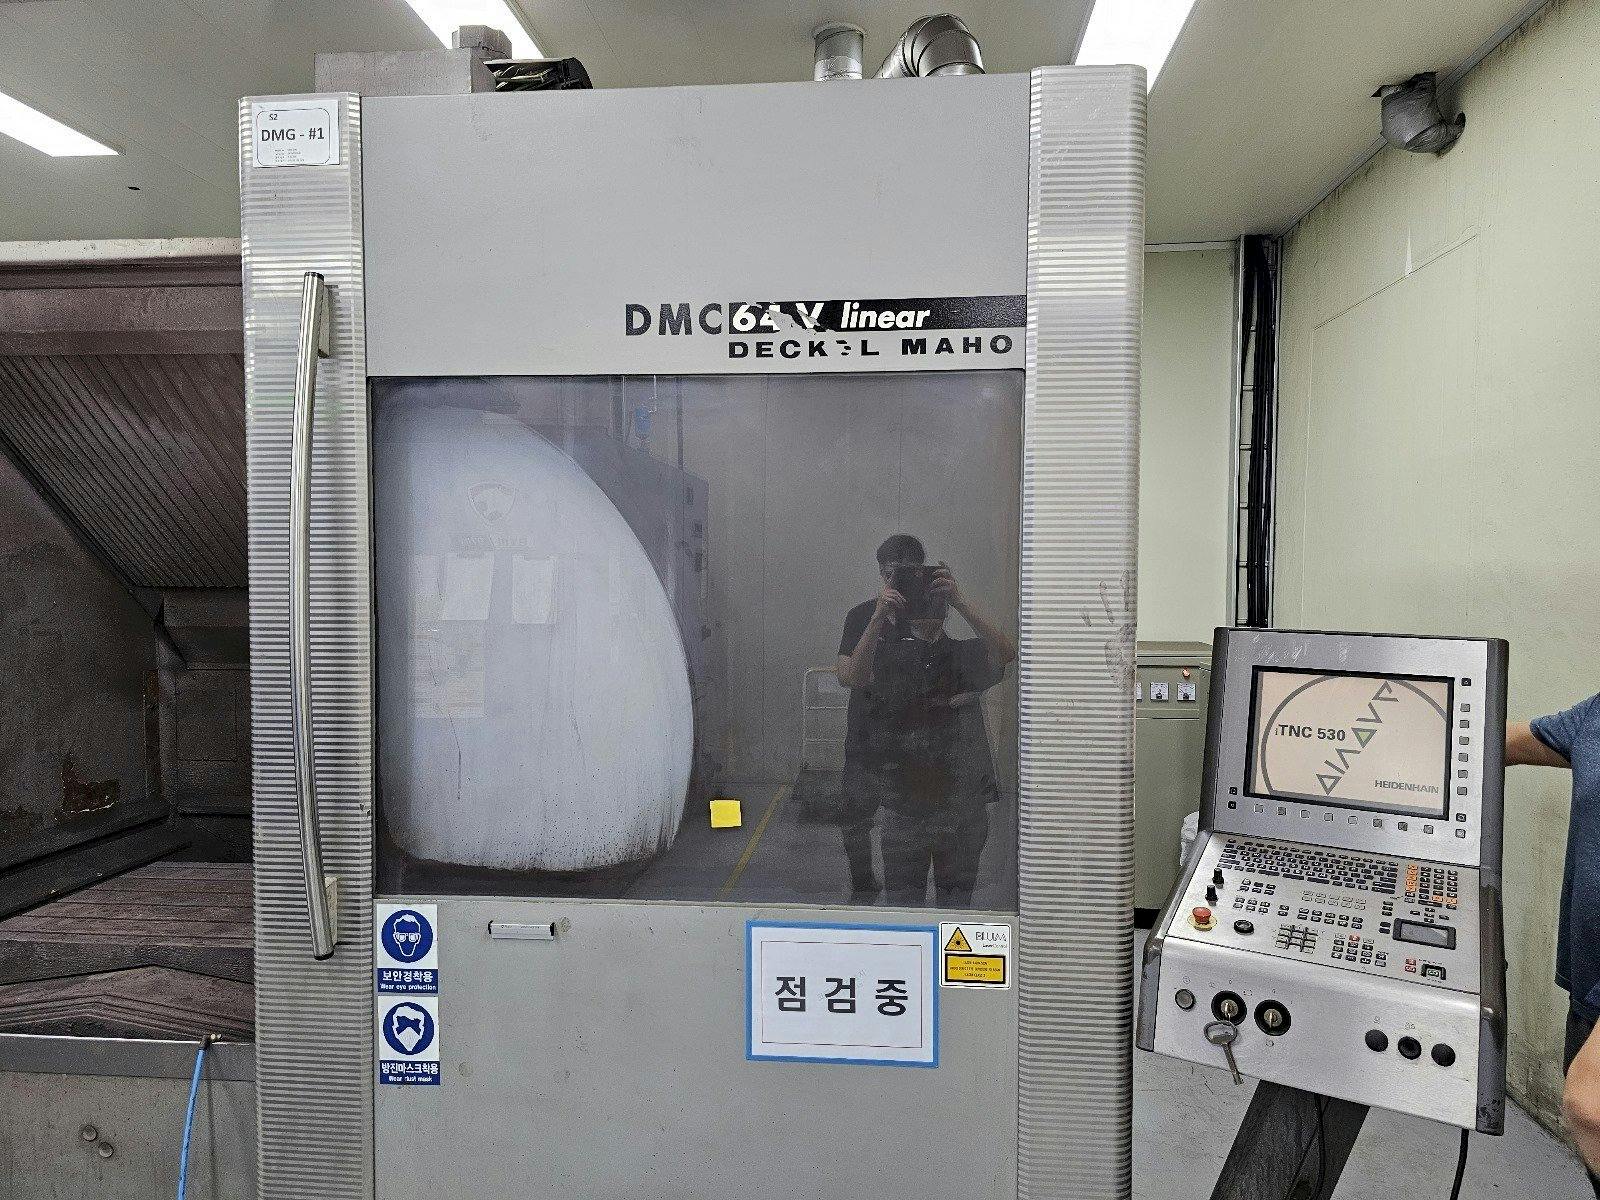 DECKEL MAHO DMC 64V linear Mašinos vaizdas iš priekio